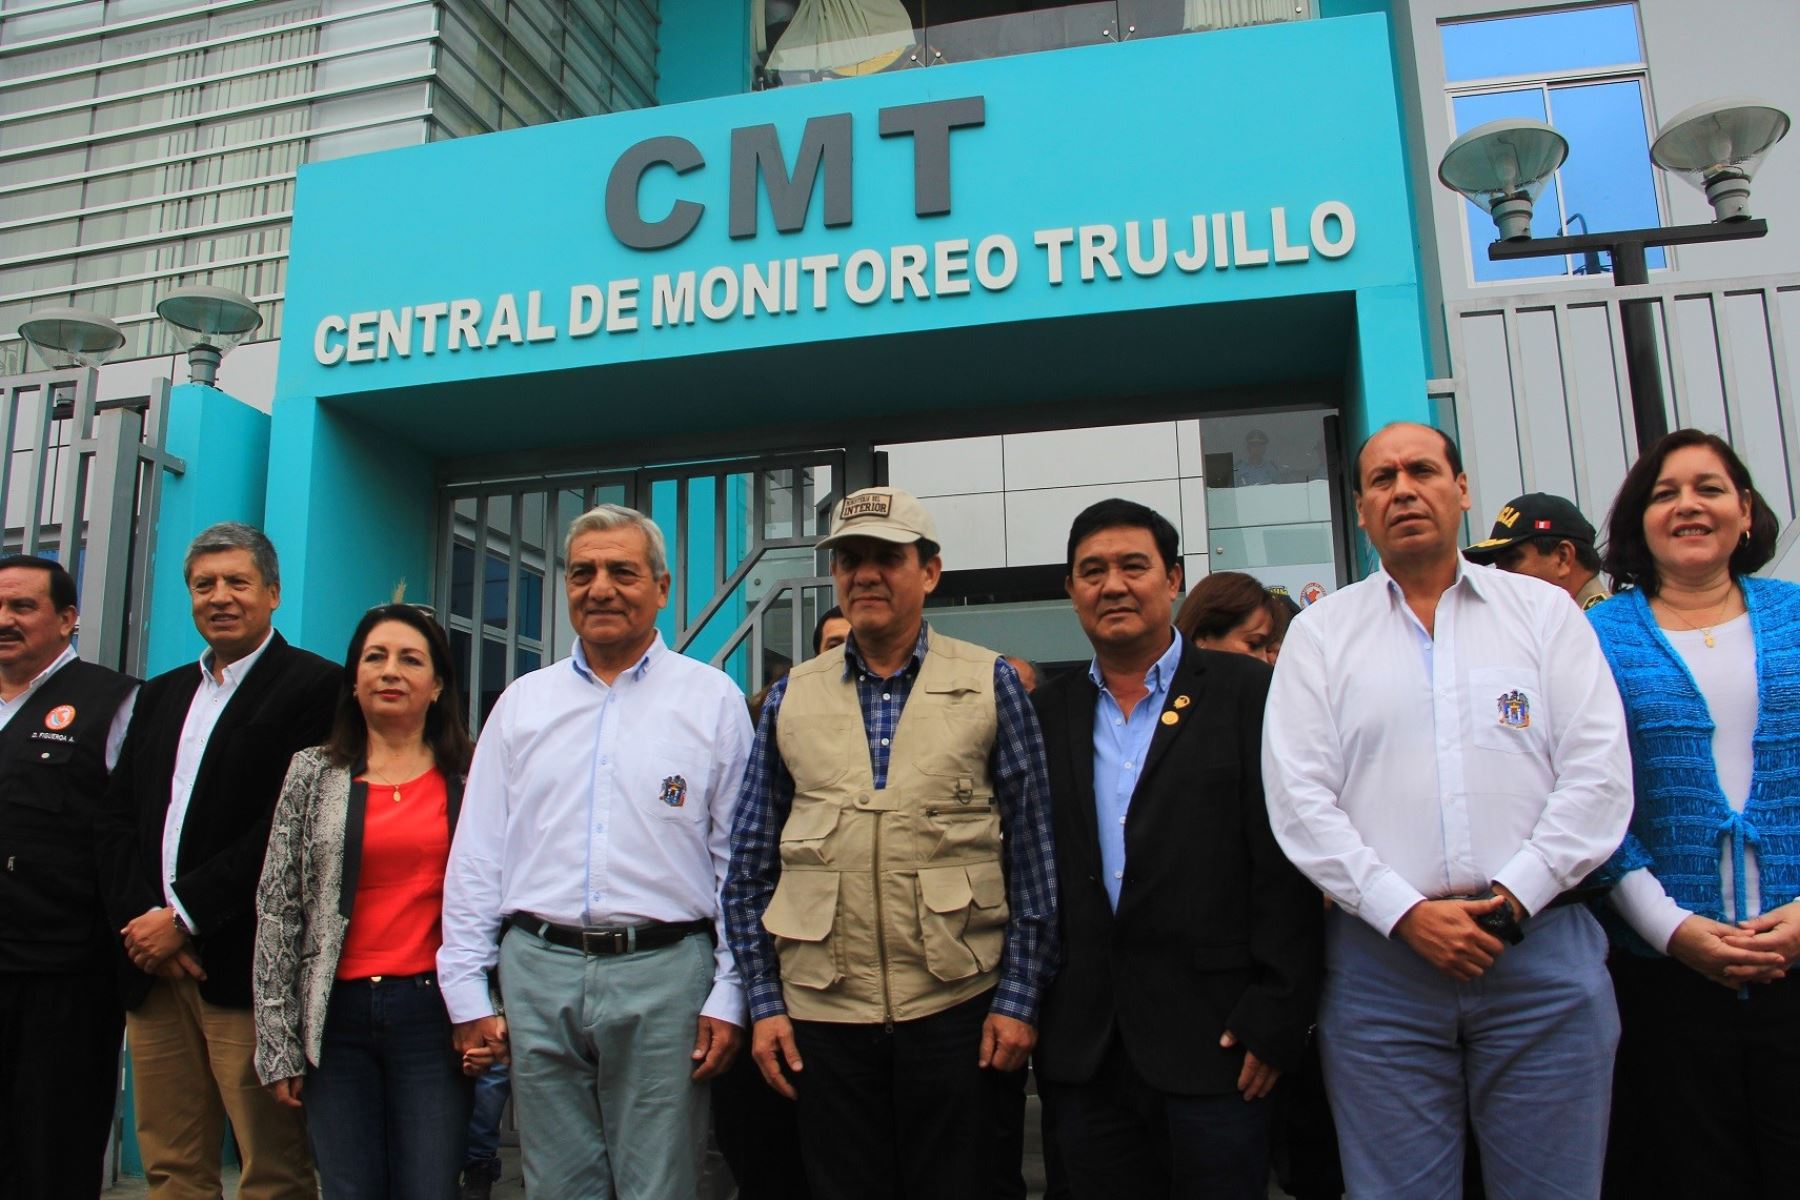 Central de emergencia 105 de la Policía Nacional en Trujillo operará en central de monitoreo de municipio provincial. ANDINA/Luis Puell